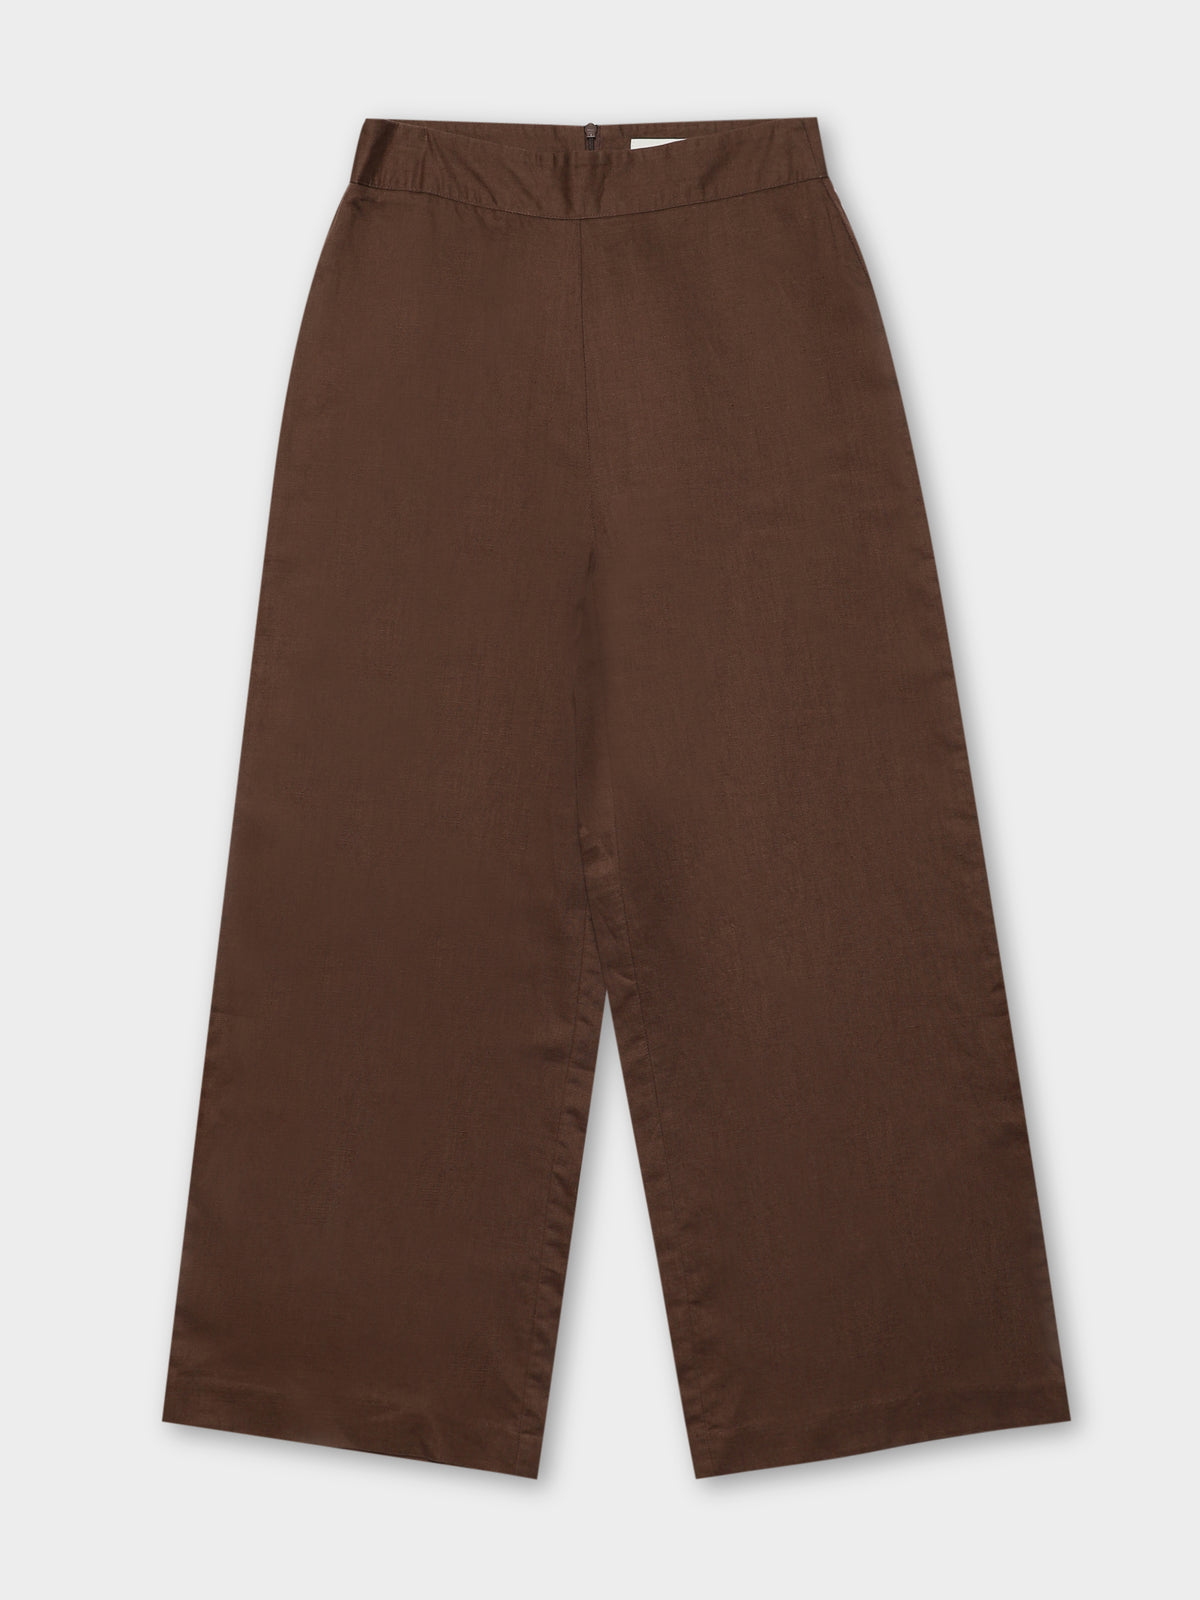 Selma Wide Leg Pants in Chocolate Brown